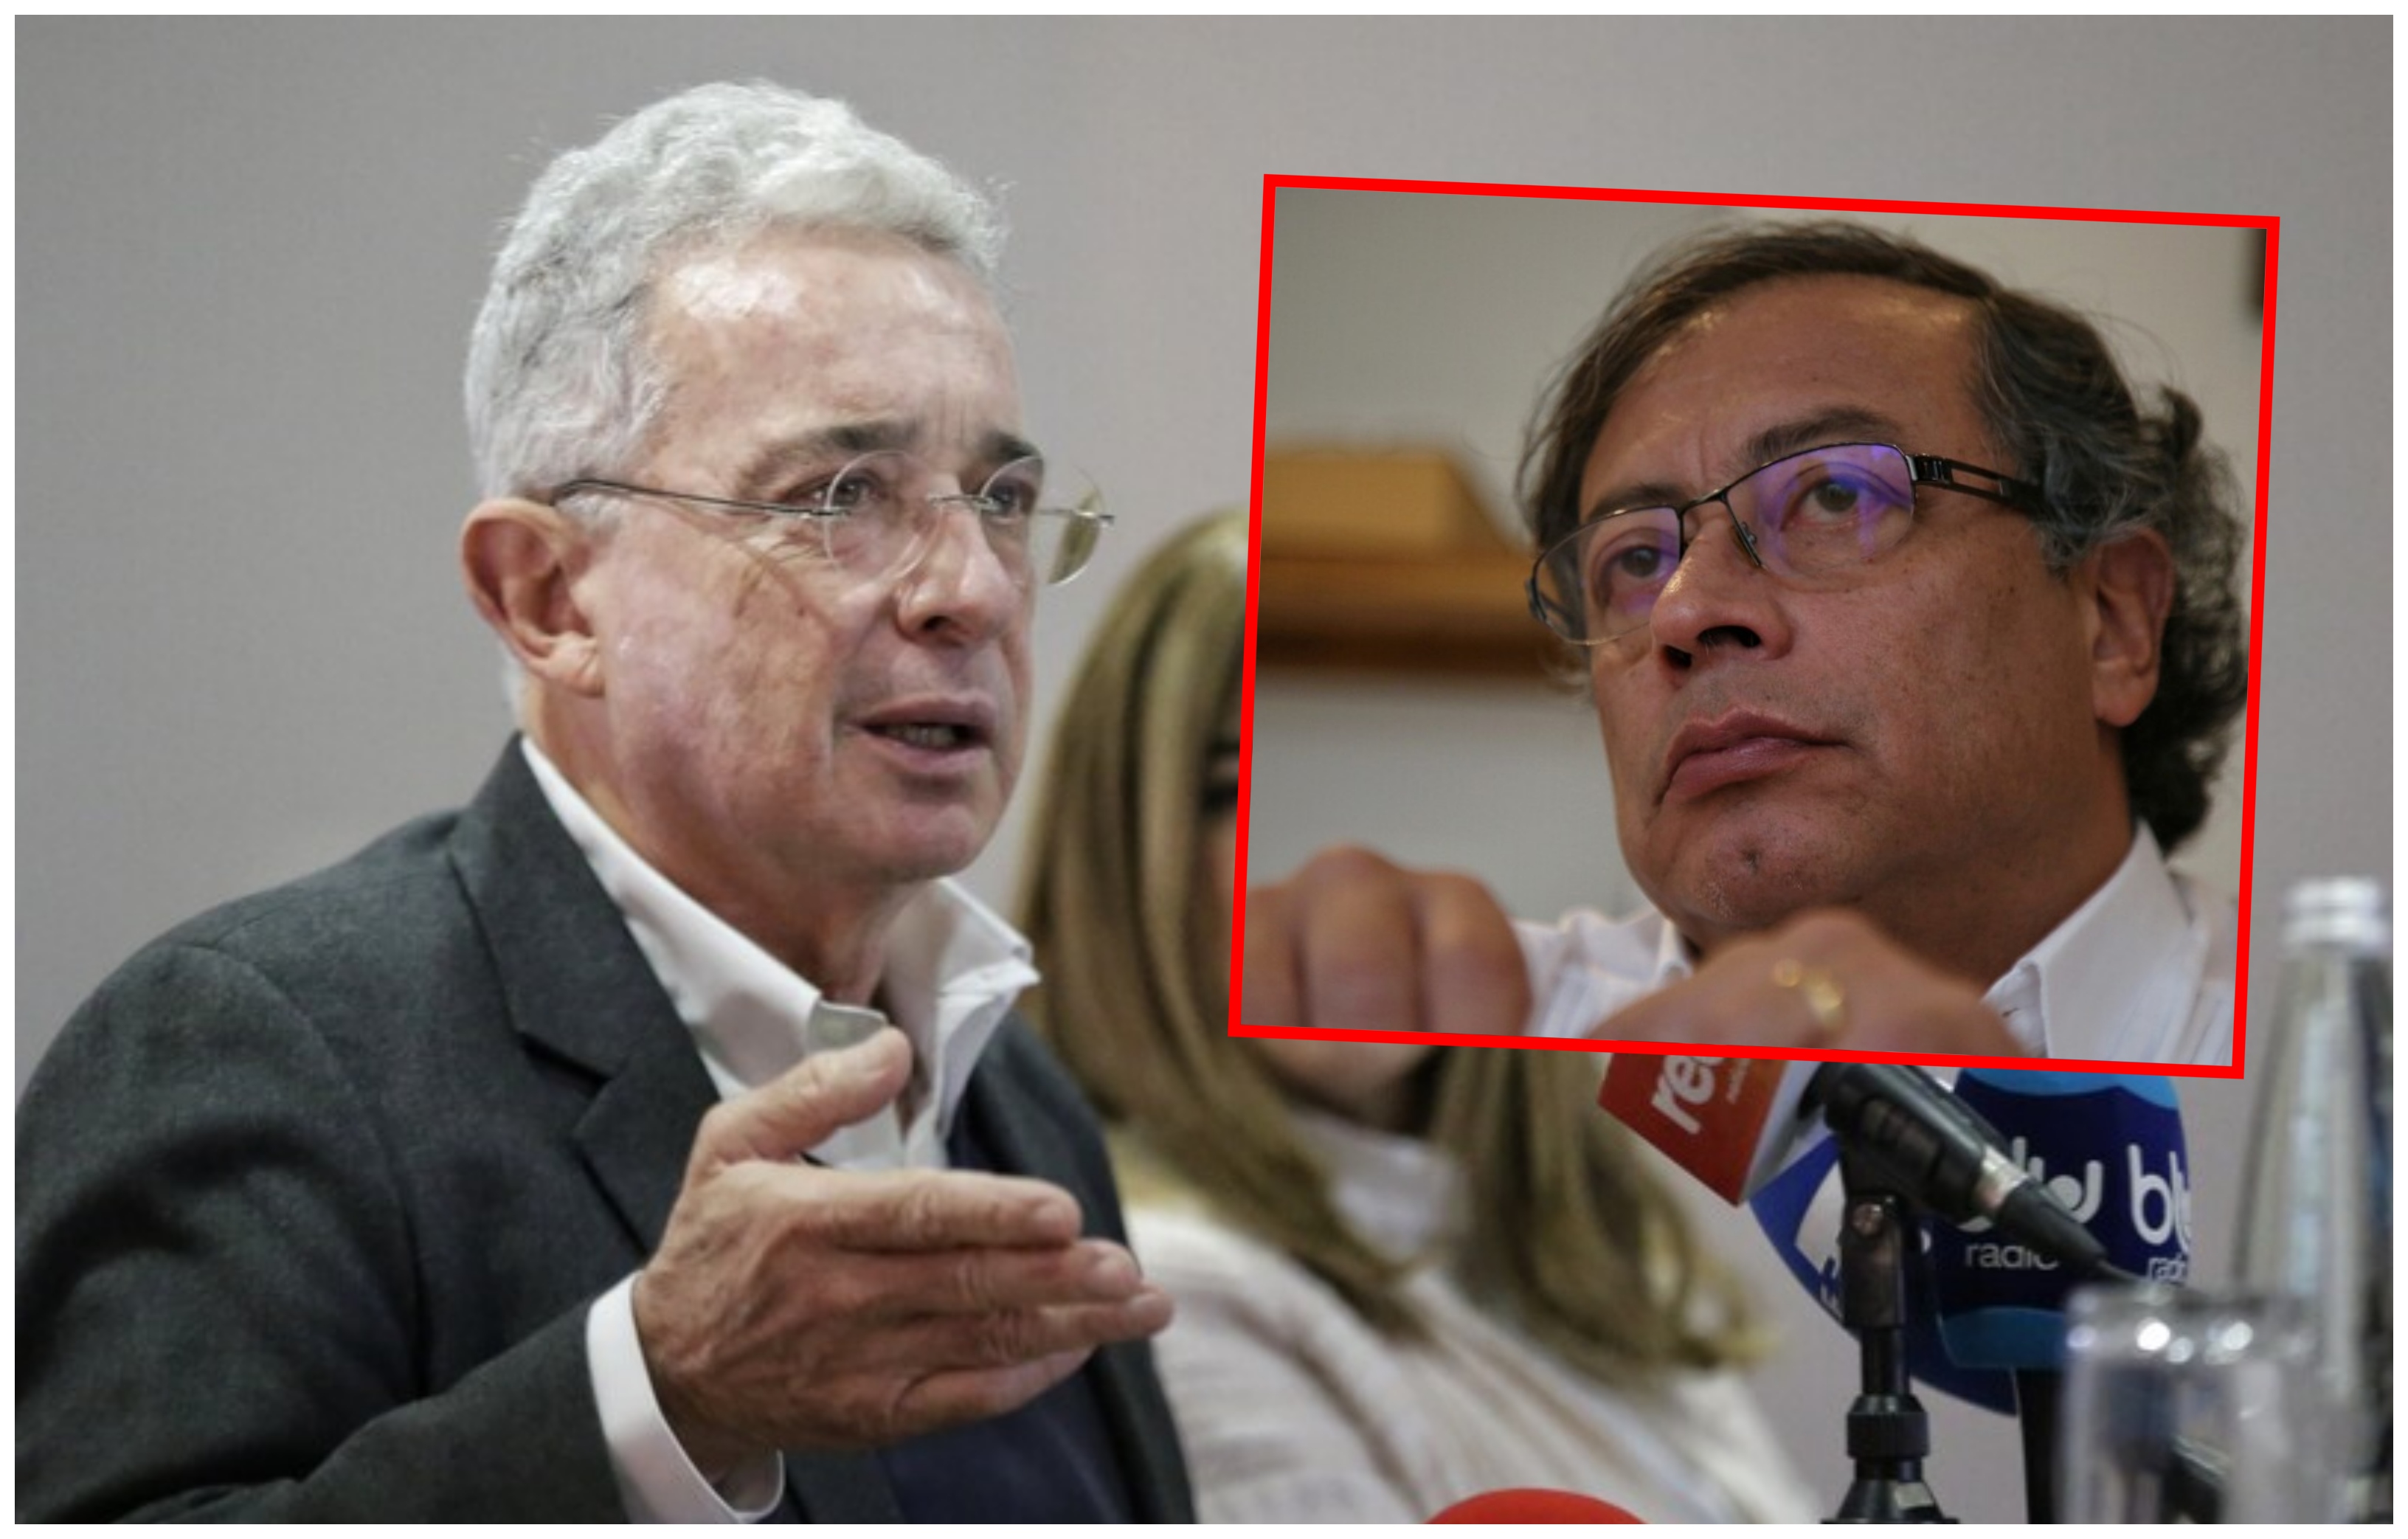 “No hay que pasar facturas. Ahora hay que construir”: Álvaro Uribe despues de reunirse con Gustavo Petro